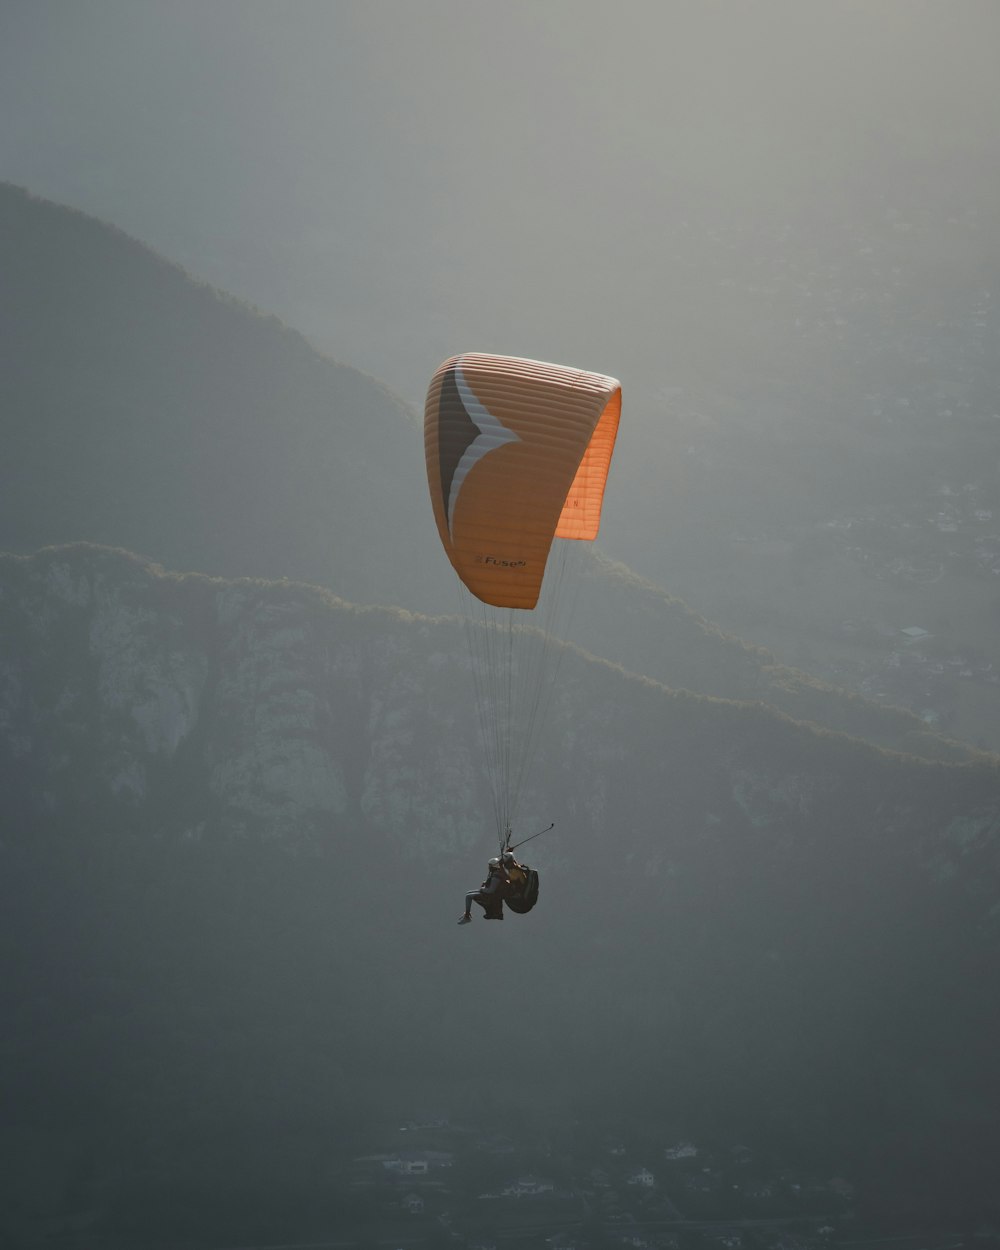 Persona en paracaídas naranja sobre nubes blancas durante el día